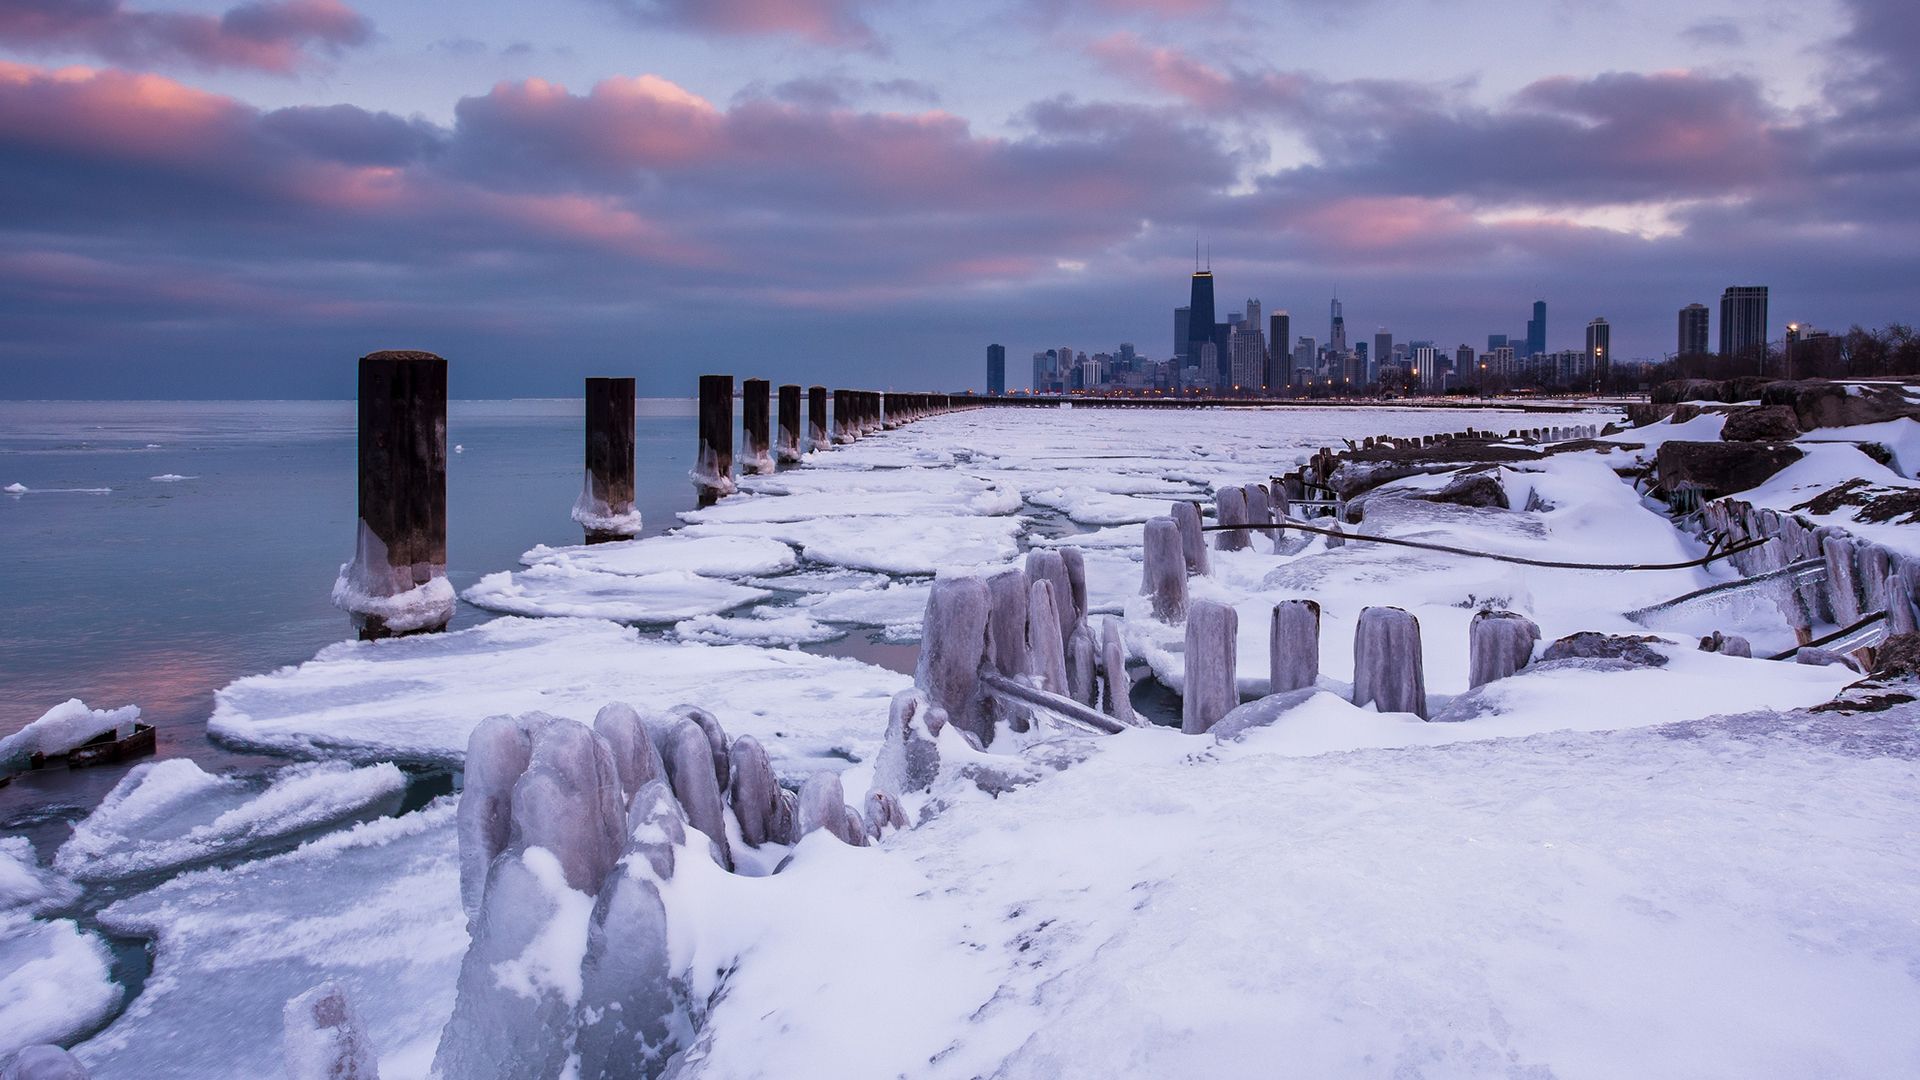 Chicago Buildings Skyscrapers Winter Frozen Ice Posts Ocean wallpaperx1080